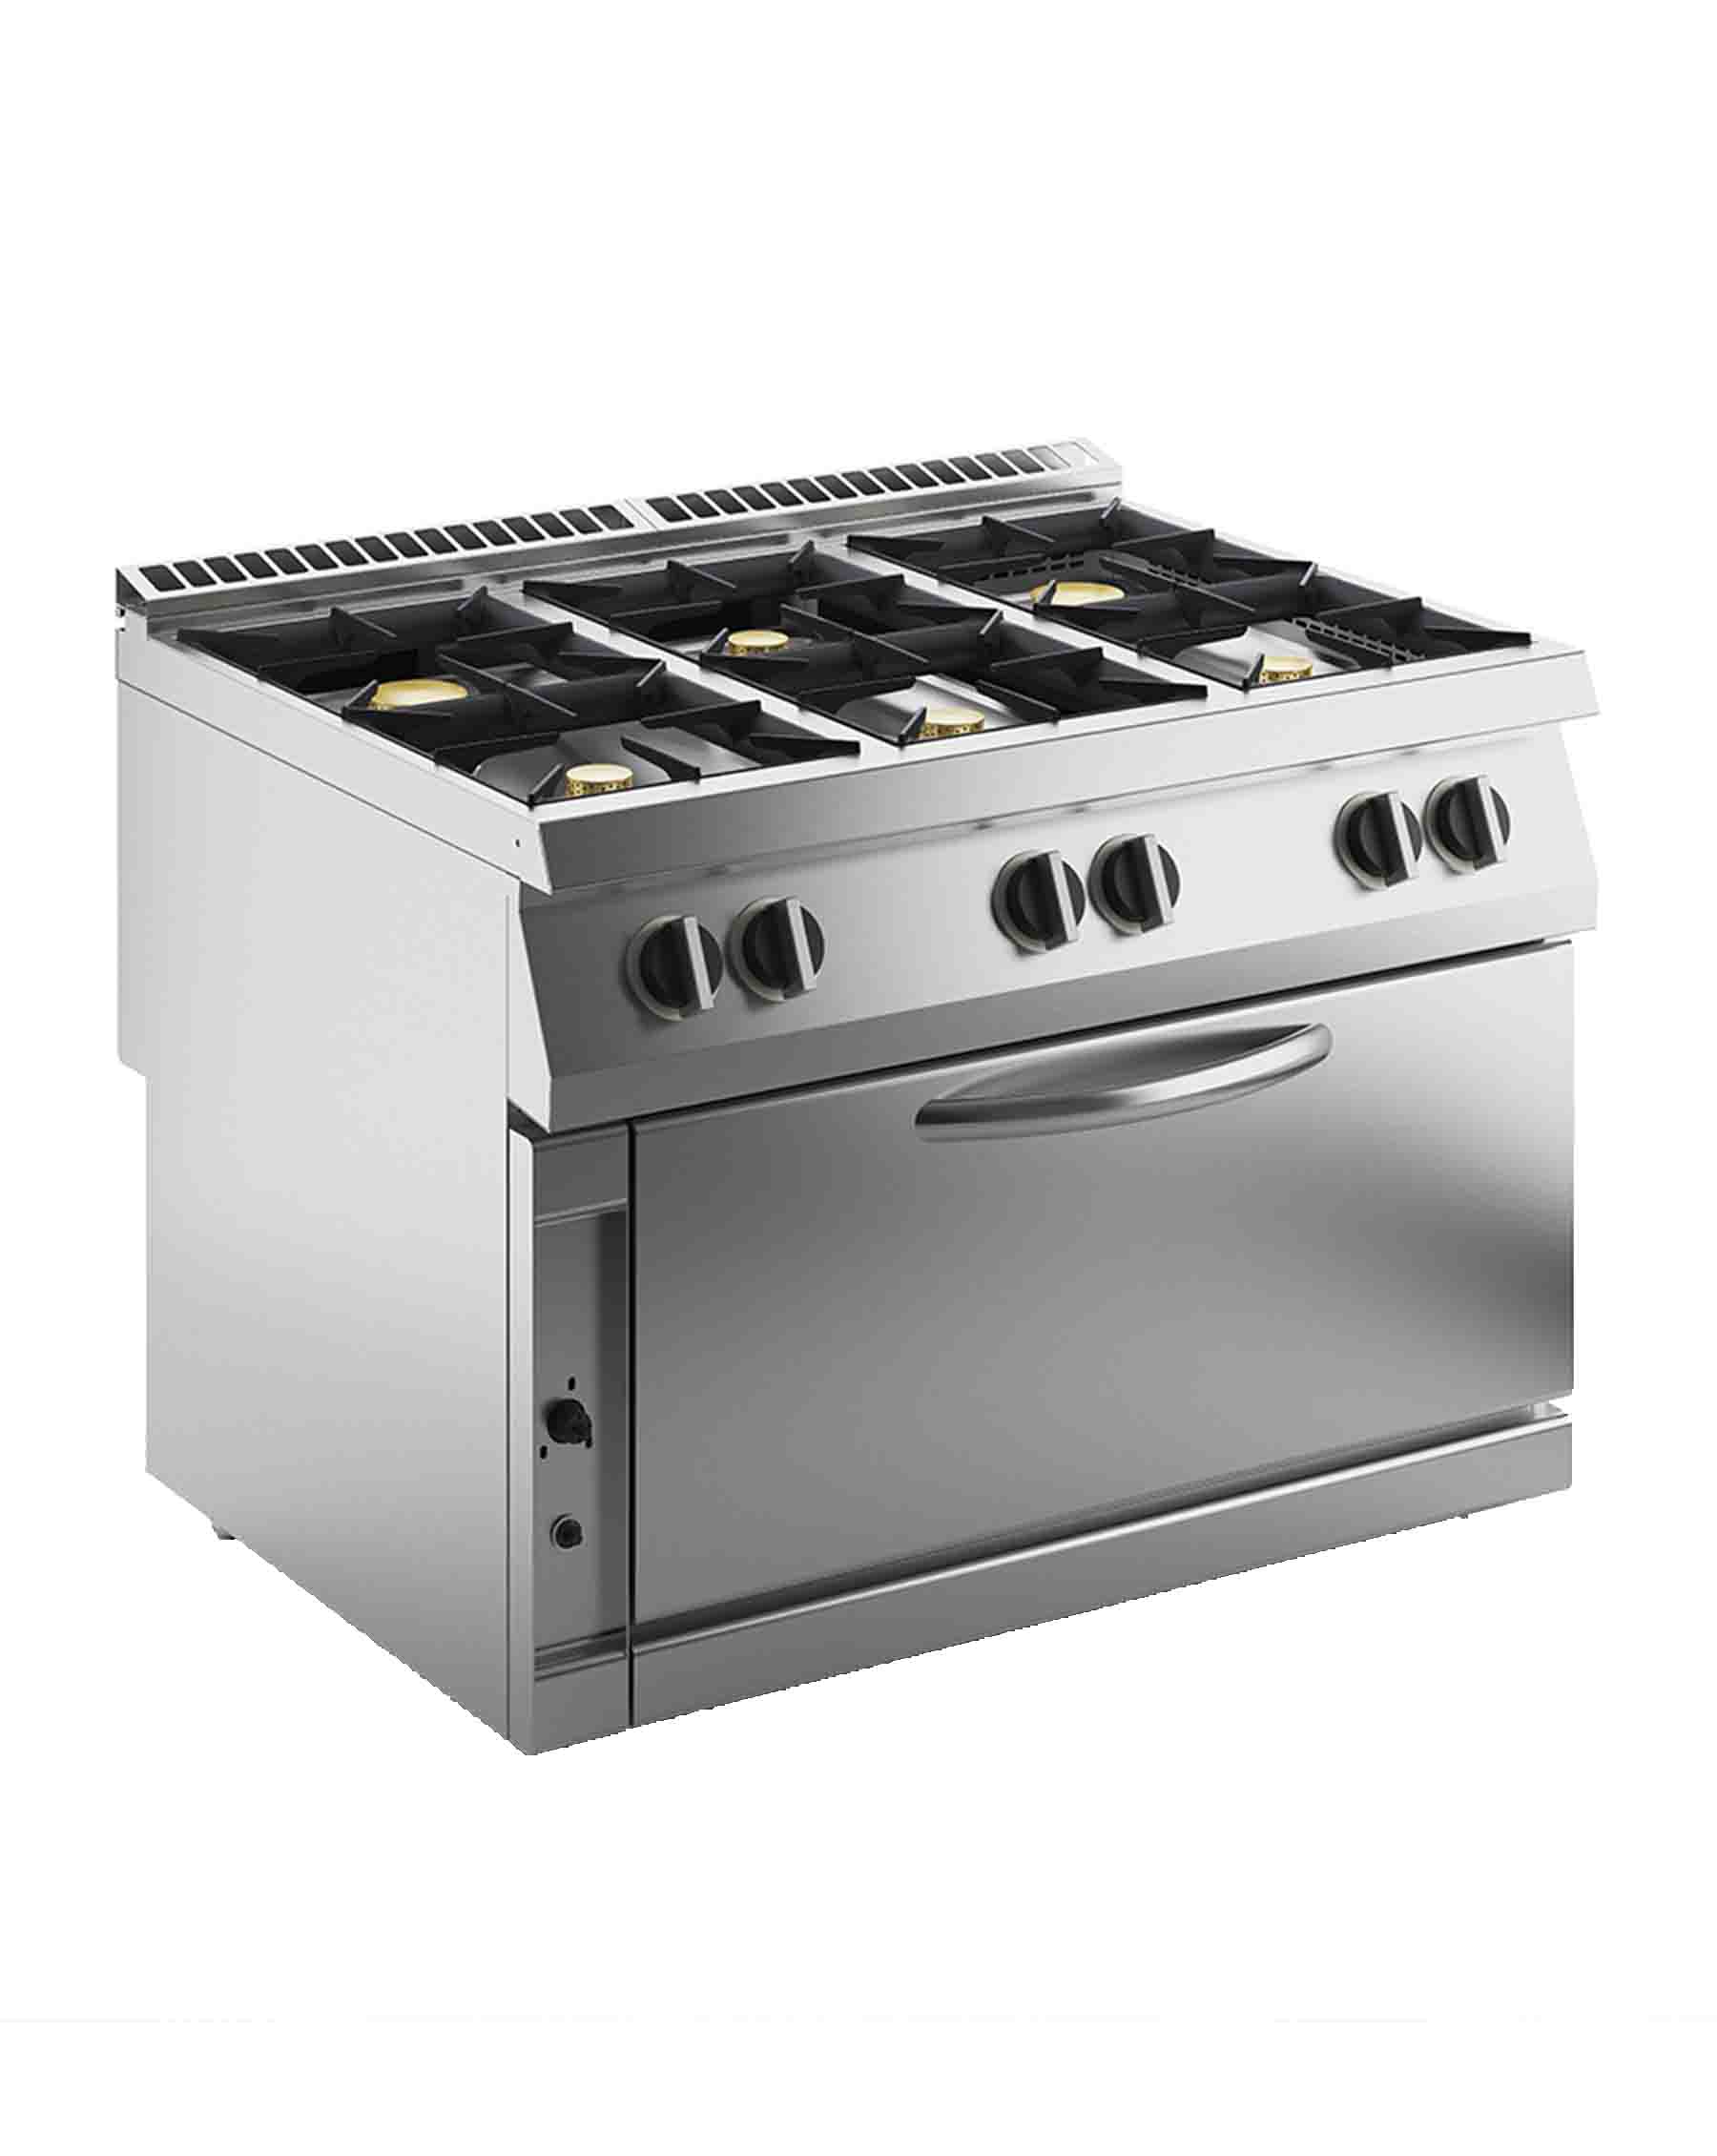 maxi oven and range 6 burners